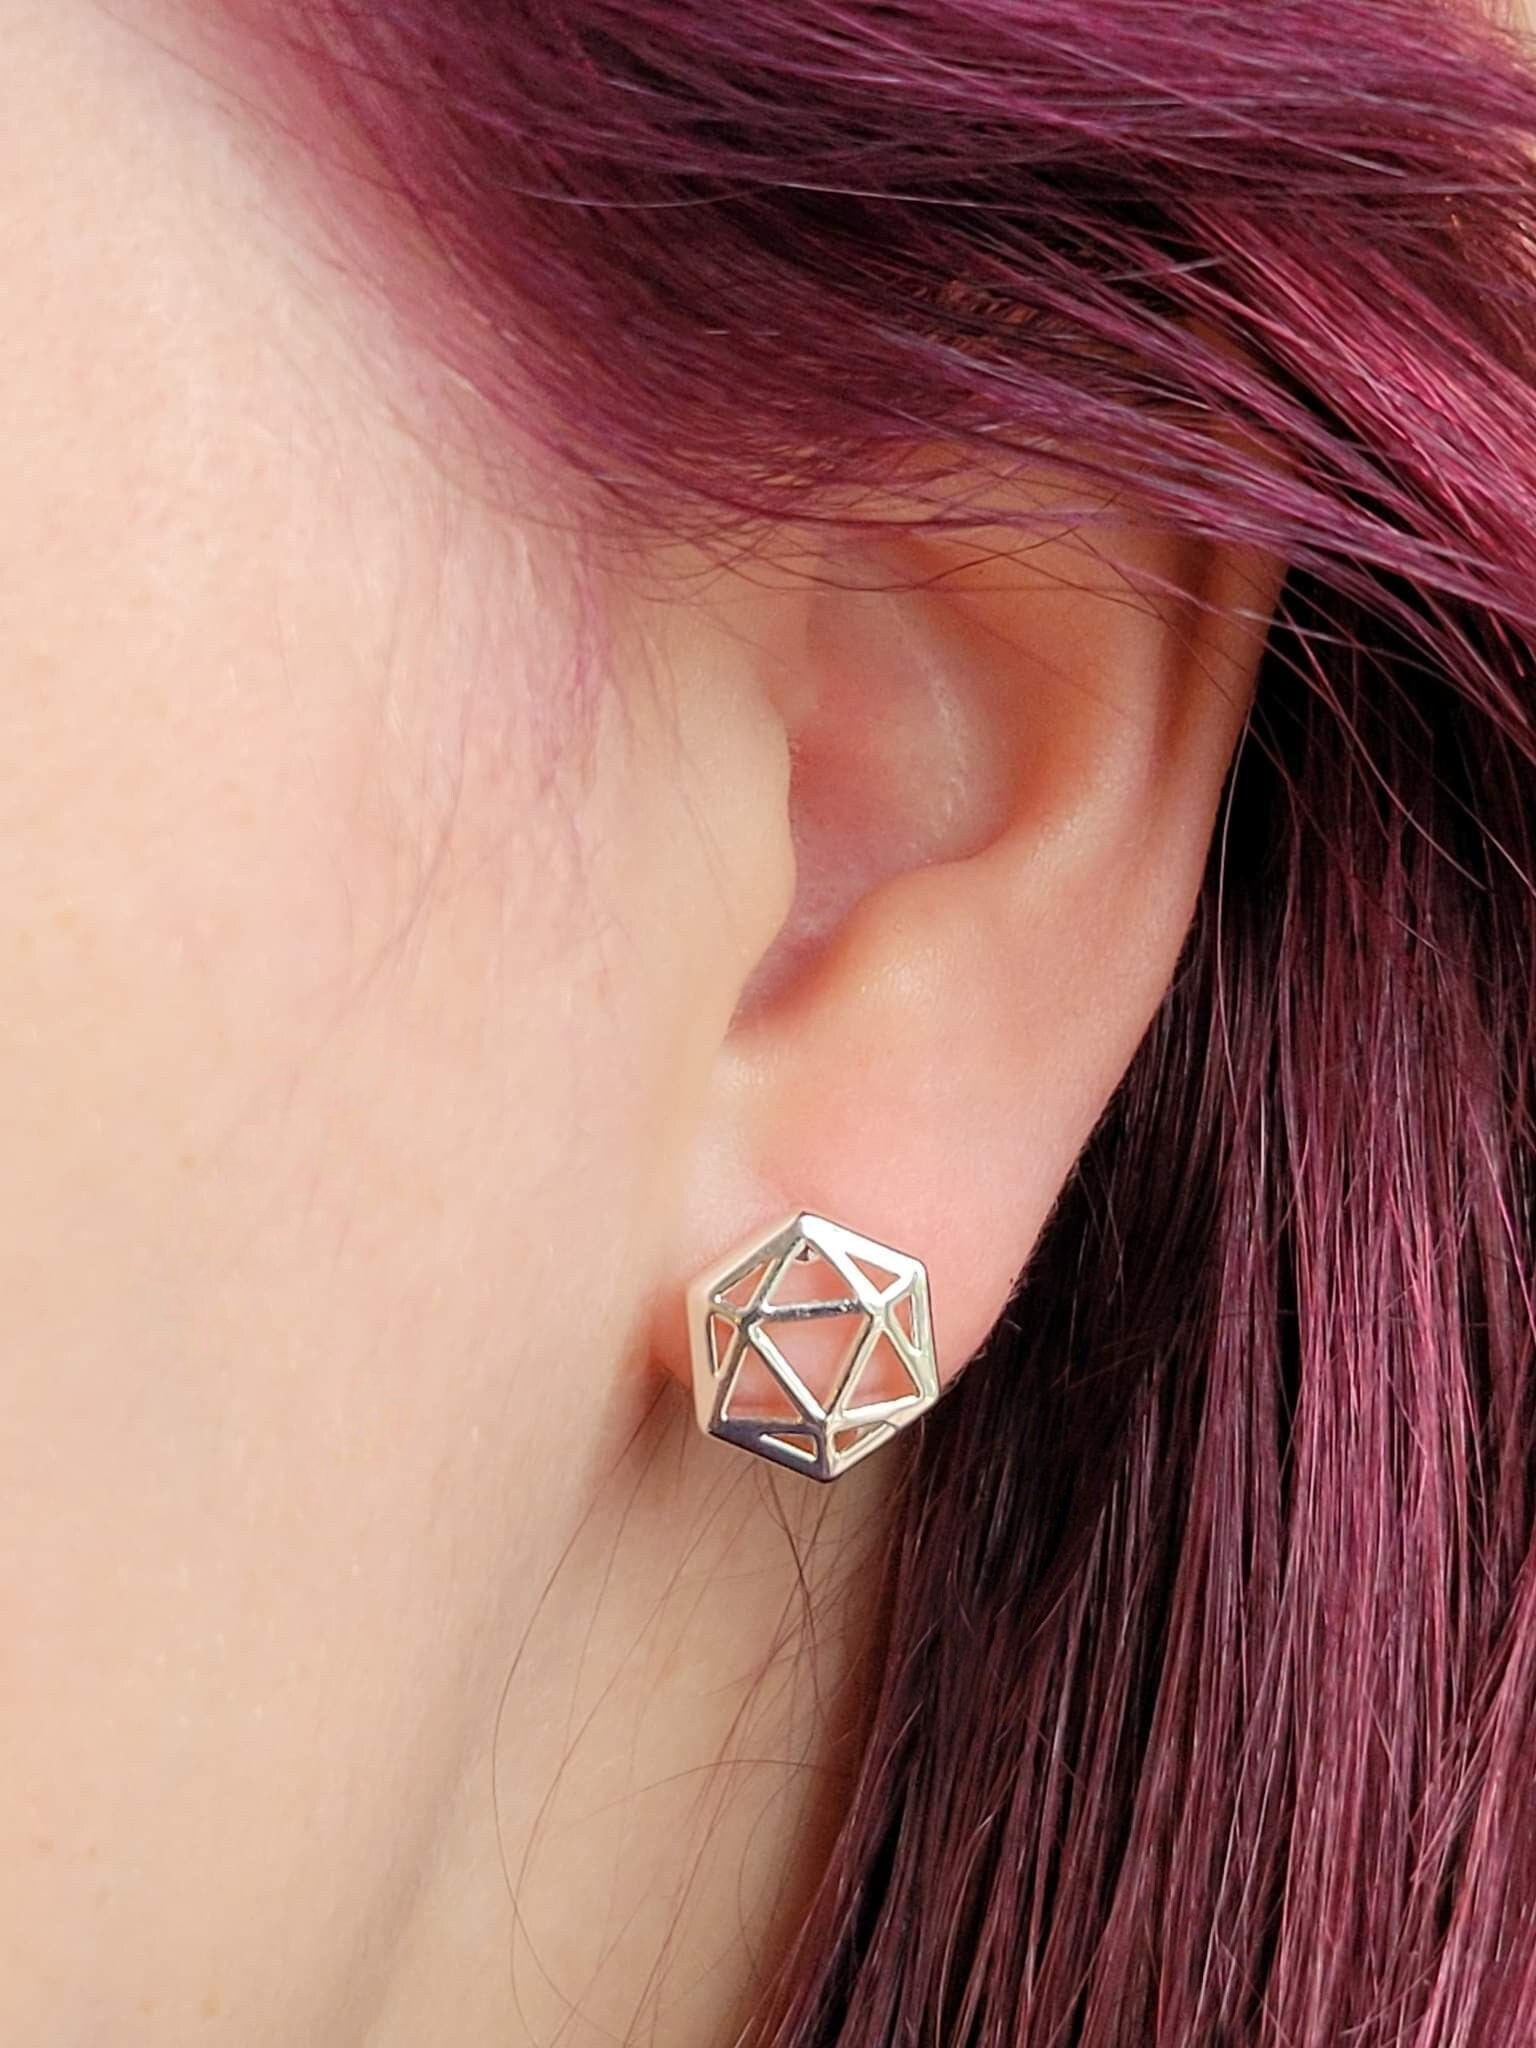 D20 Dice stud earrings, Dice earrings with blue opal